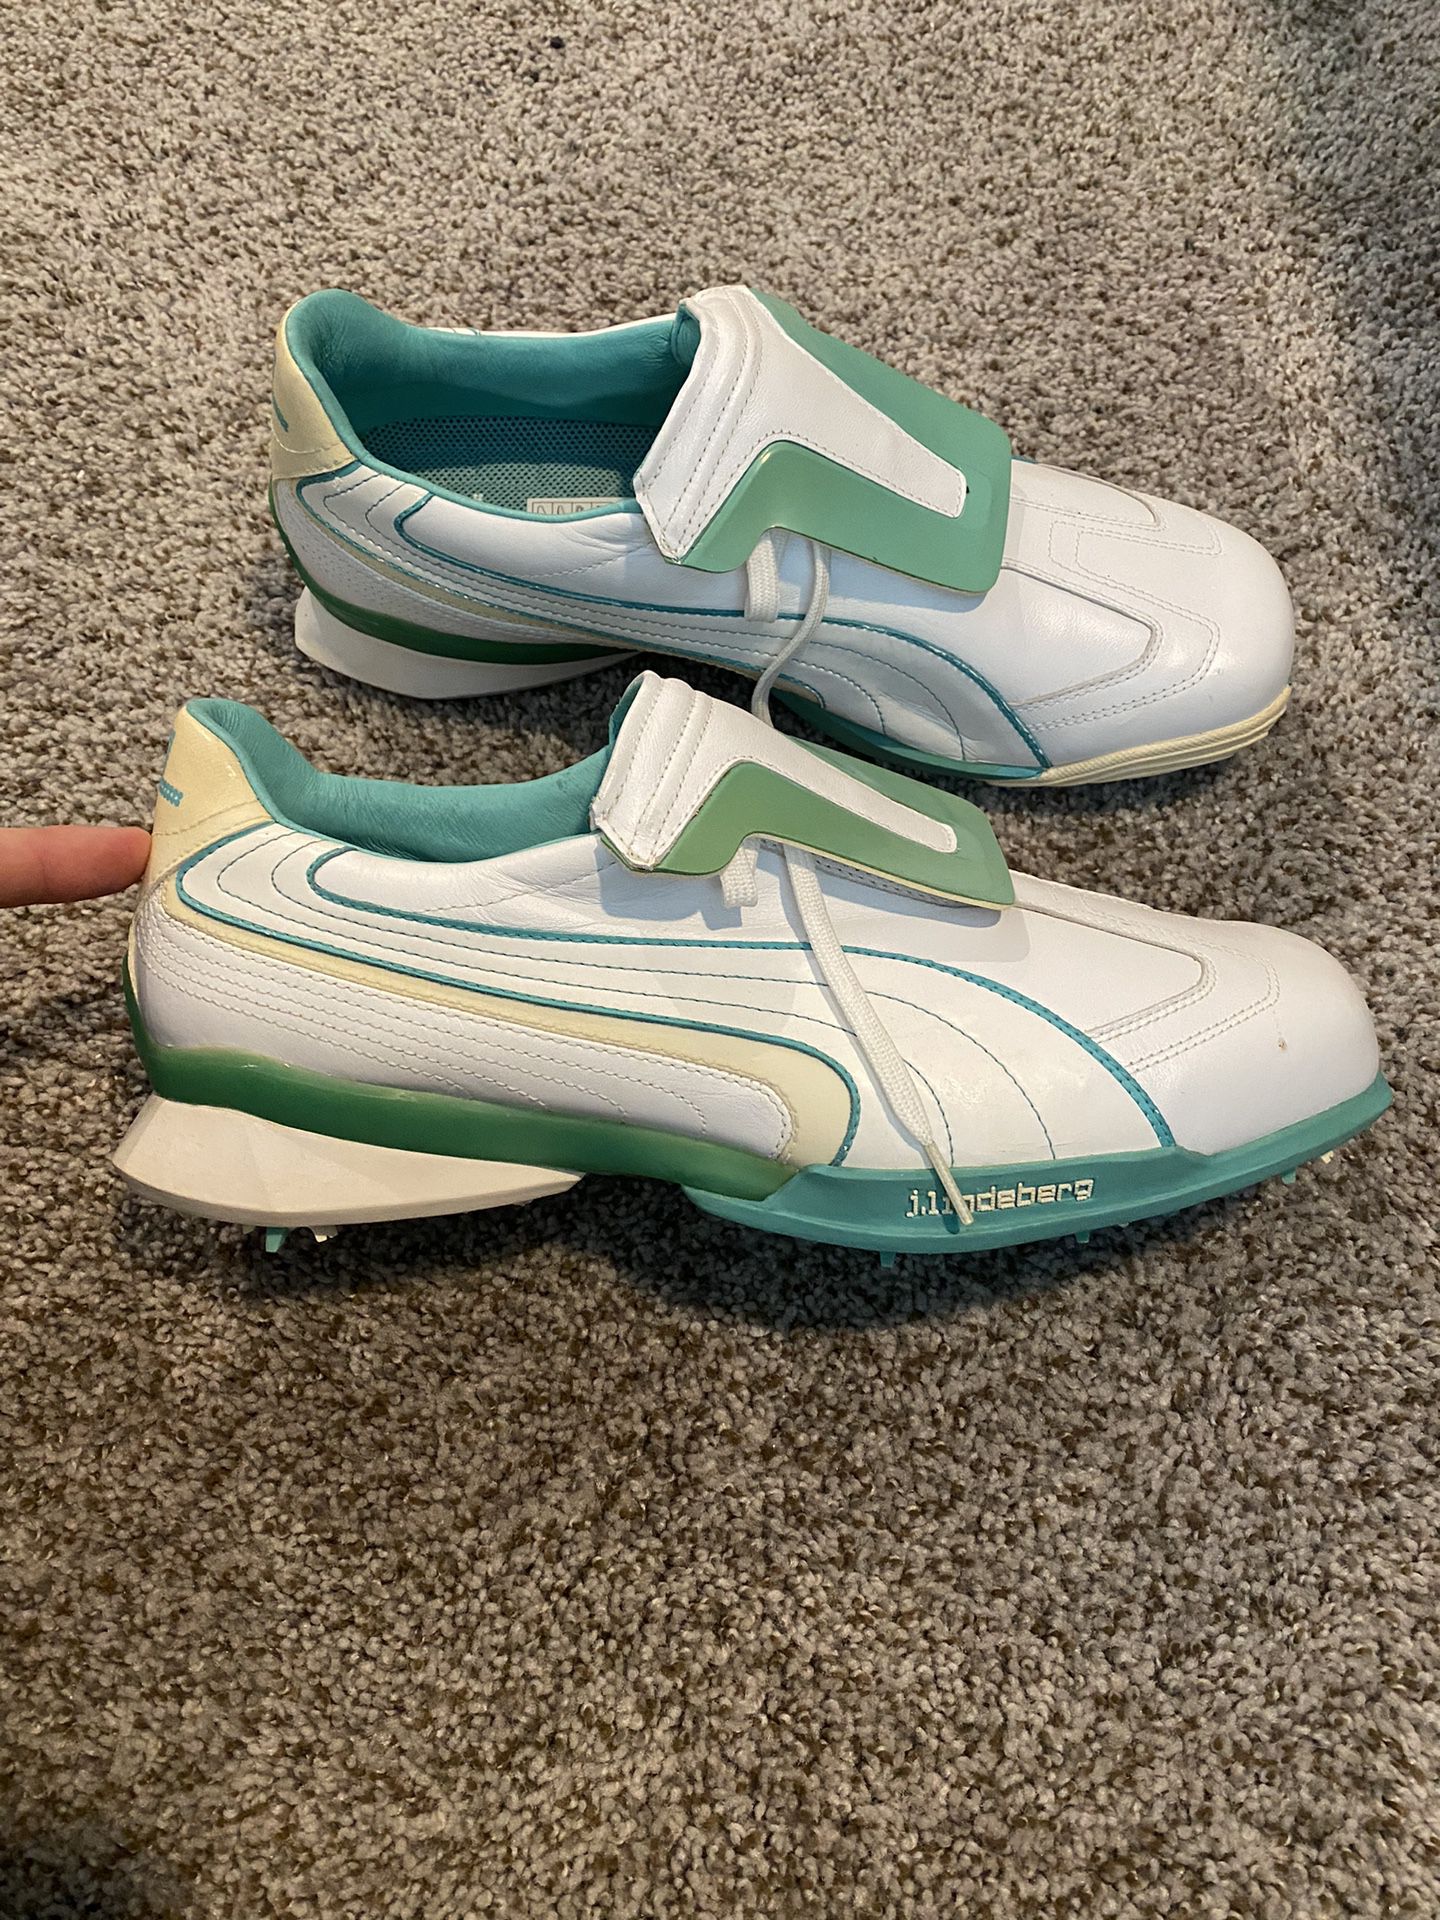 Puma Men’s Leather Golf Shoes Size 12